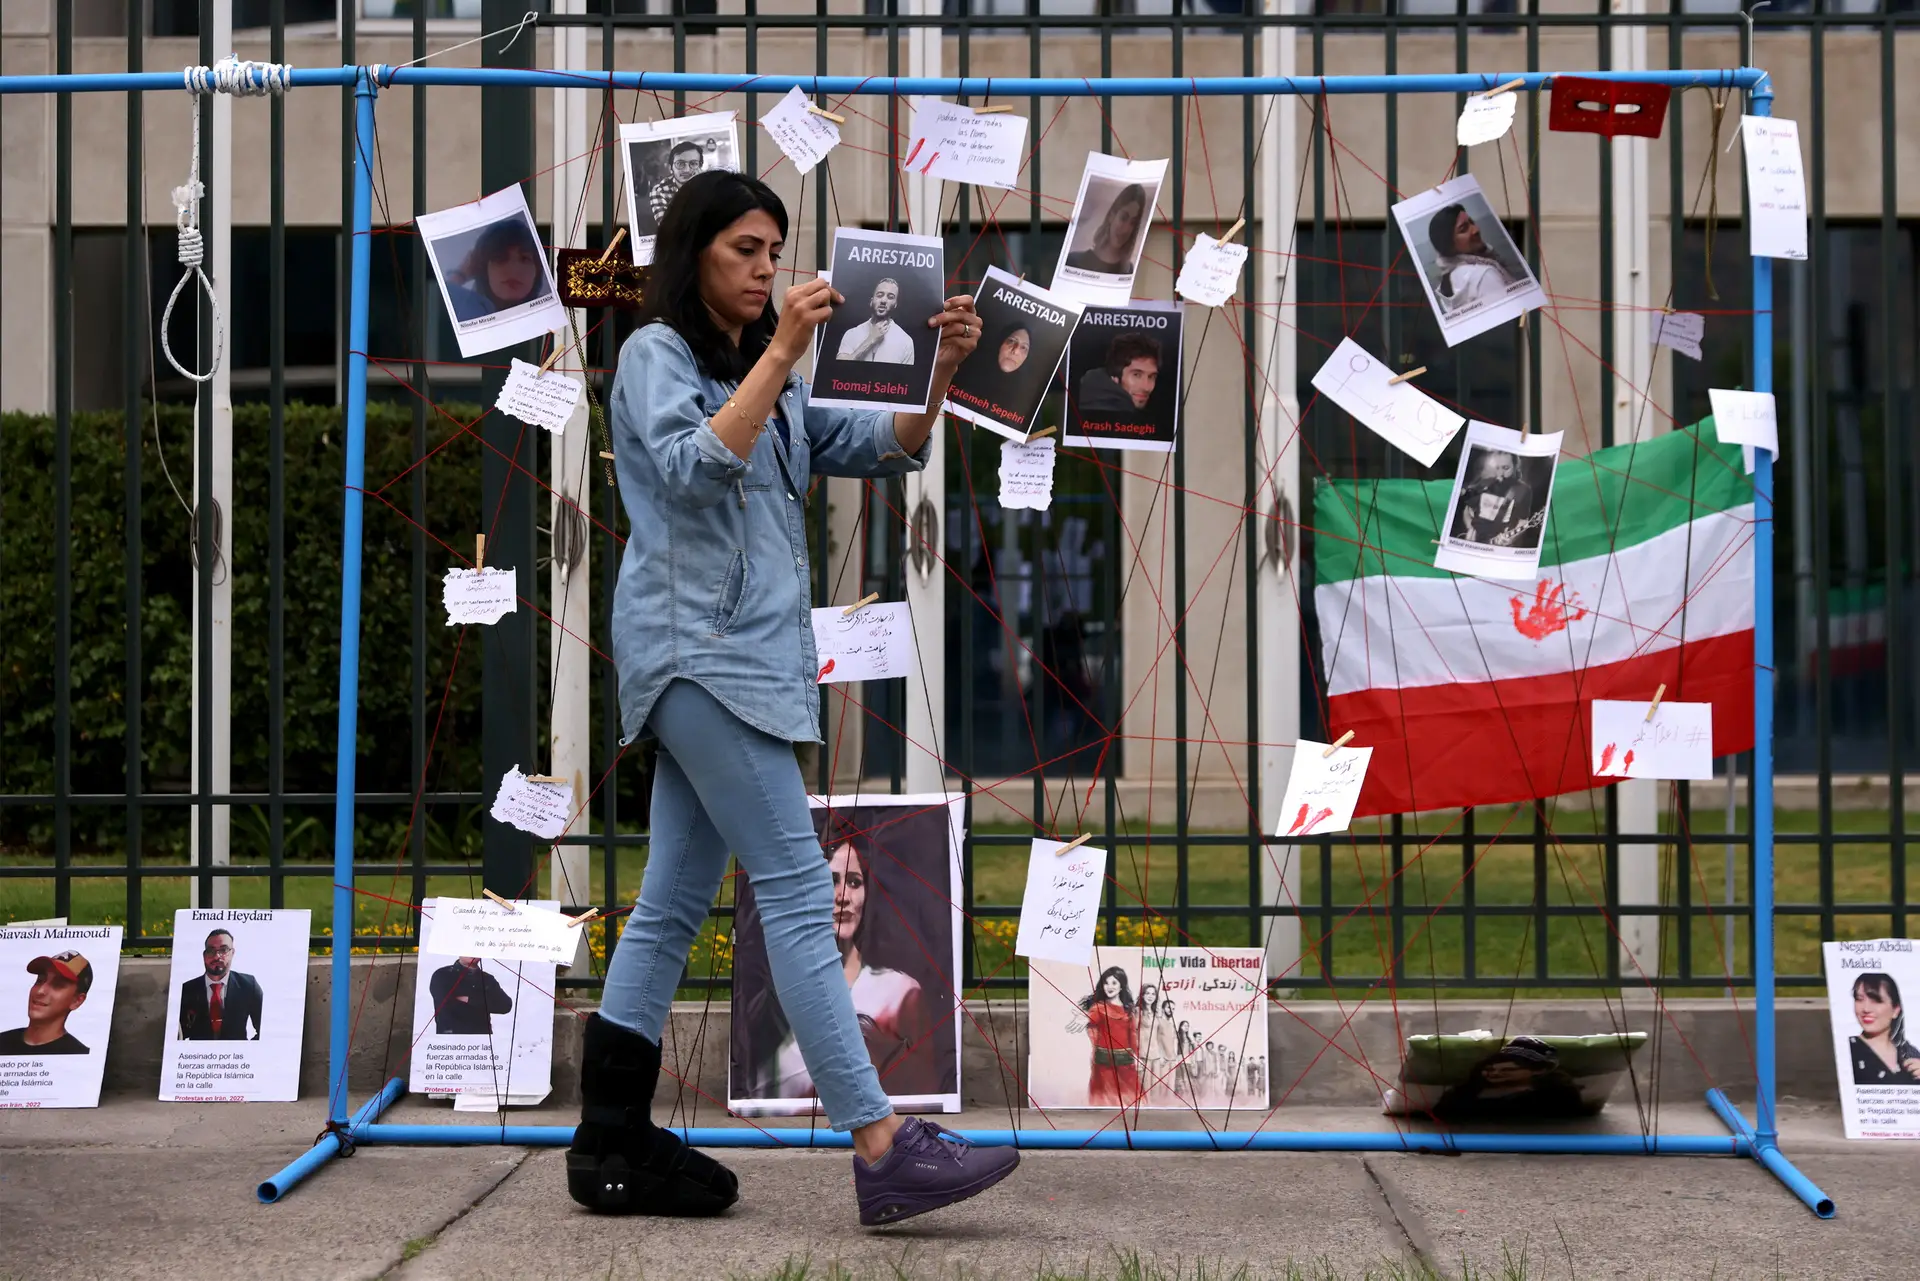 Irão: estatuto da polícia da moralidade incerto após anúncio de alegada abolição